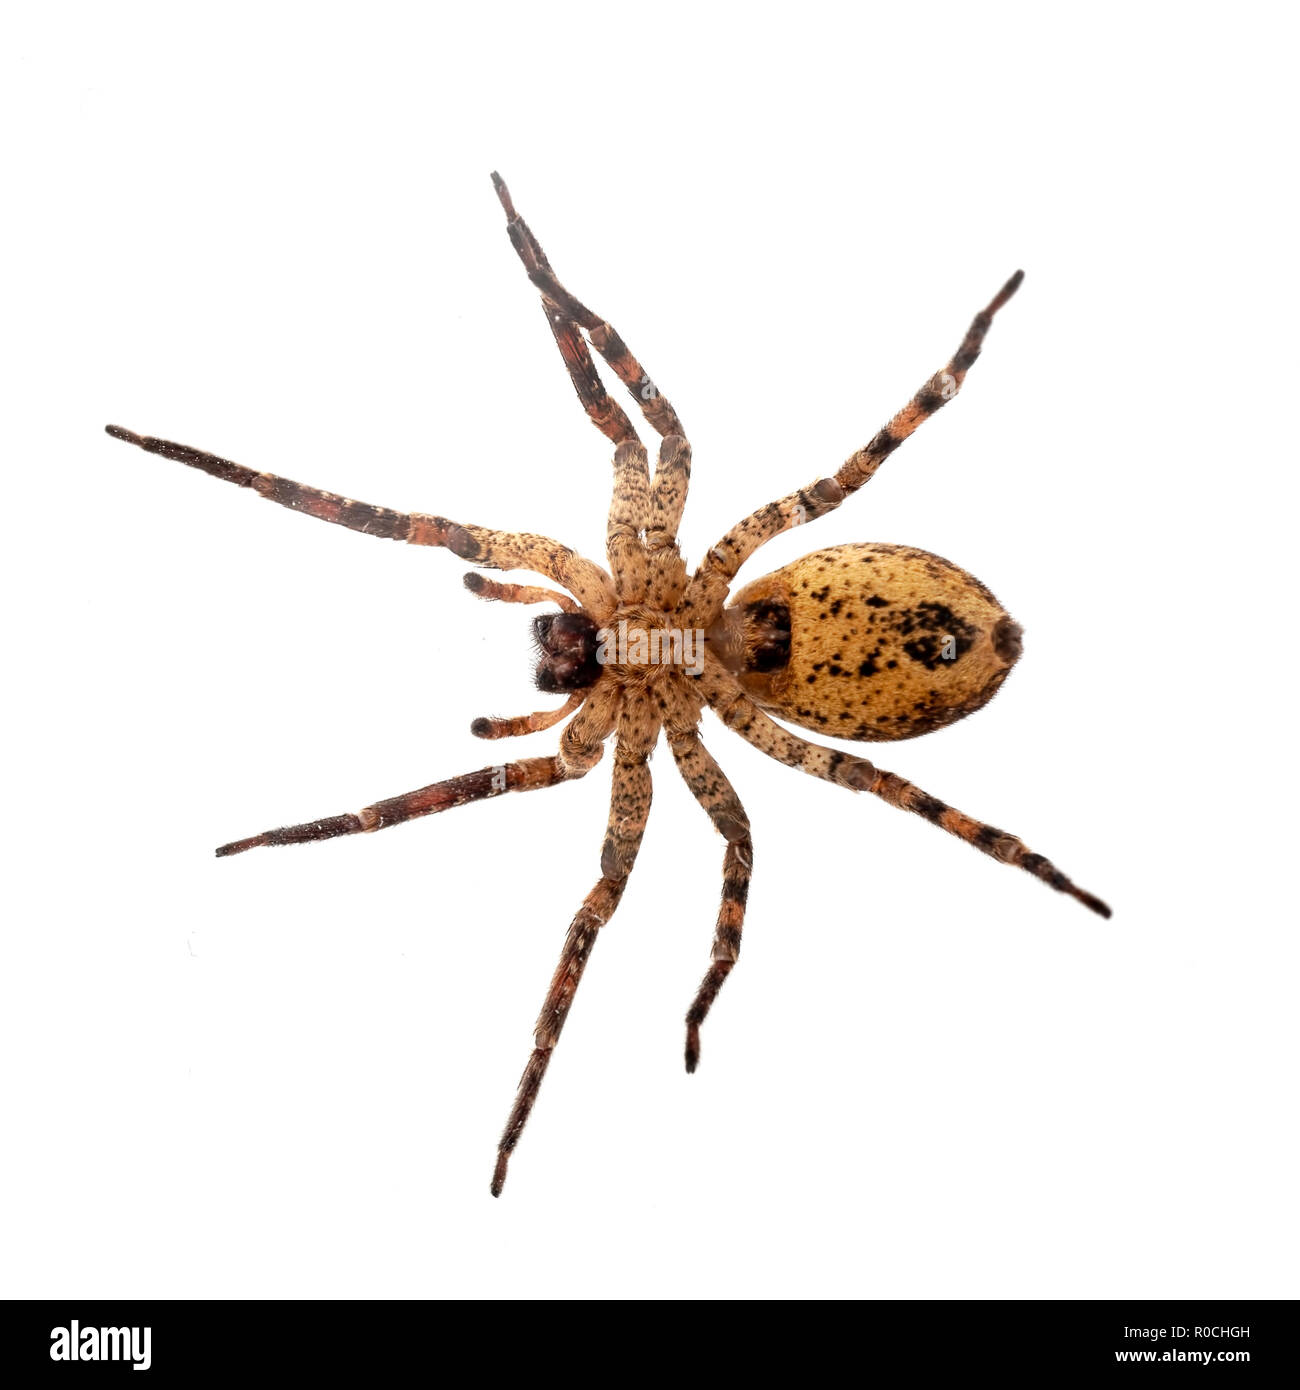 Zoropsis spinimana, Falsche wolf spider, Unterseite - Foto in Glas genommen. Auf weiß isoliert. Stockfoto